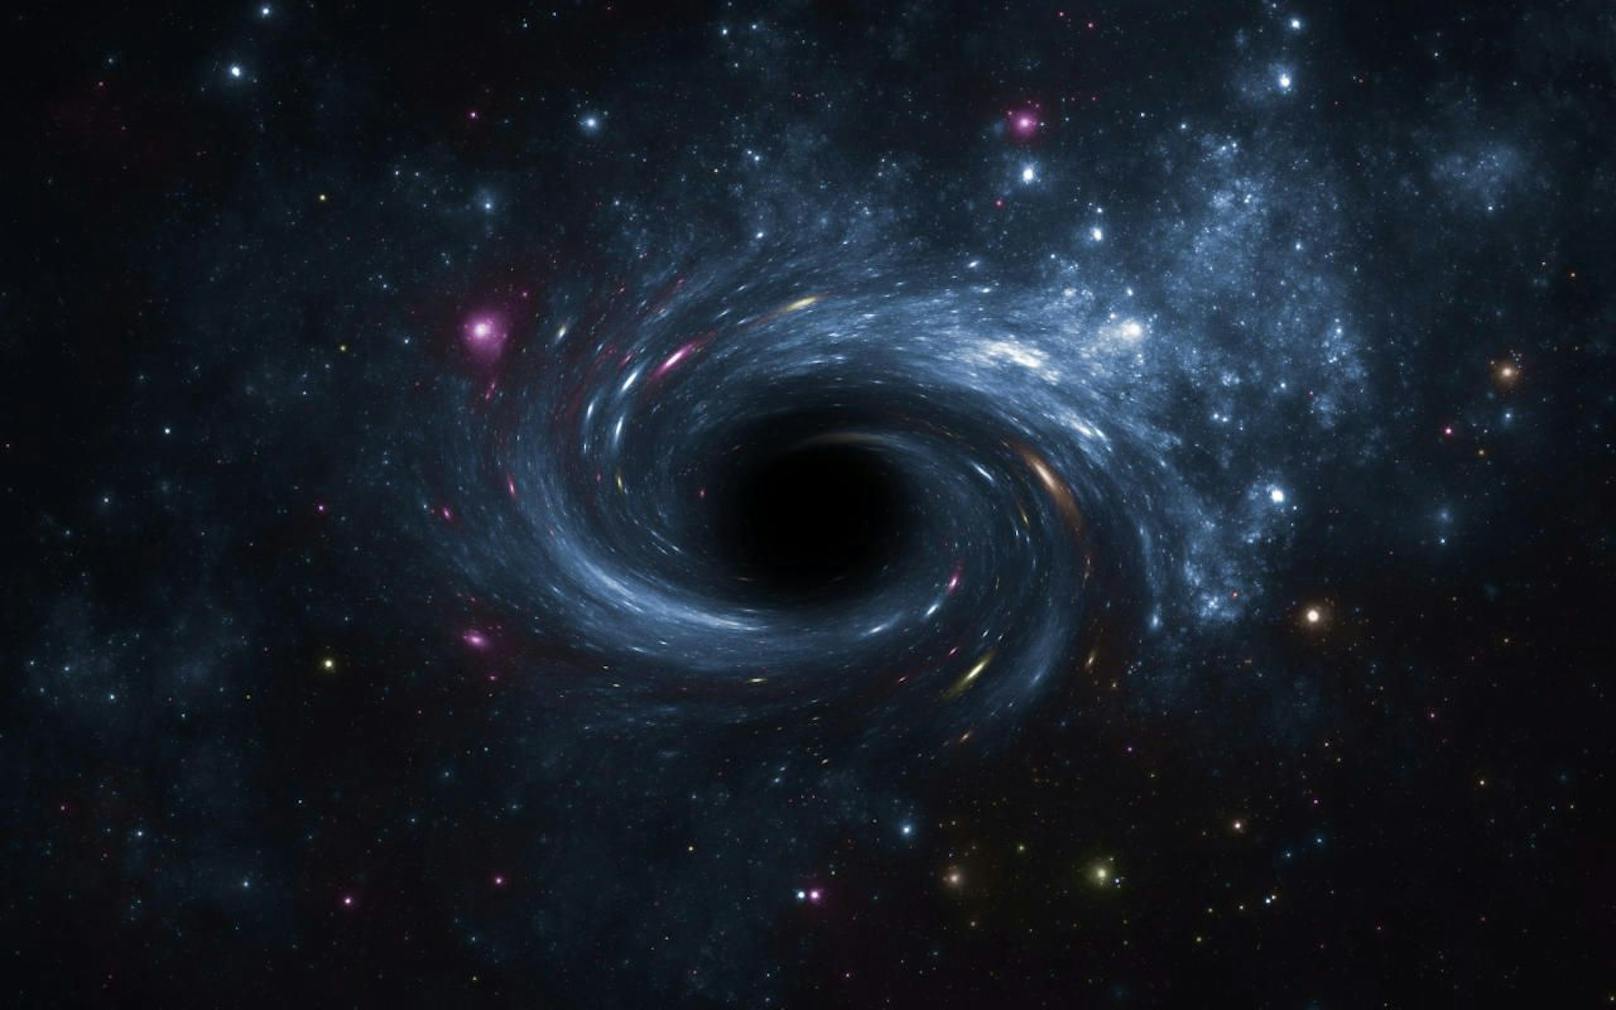 Bisher fehlte der Nachweis einer Begegnung eines Schwarzen Lochs mit einem Neutronenstern. Nun könnte es sein, dass wir eine dramatische Szene, die sich lang vor der irdischen Zeit im Universum abgespielt hat, verfolgen können. Als der Neutronenstern der Gravitationskraft des Schwarzen Lochs unterlag. 